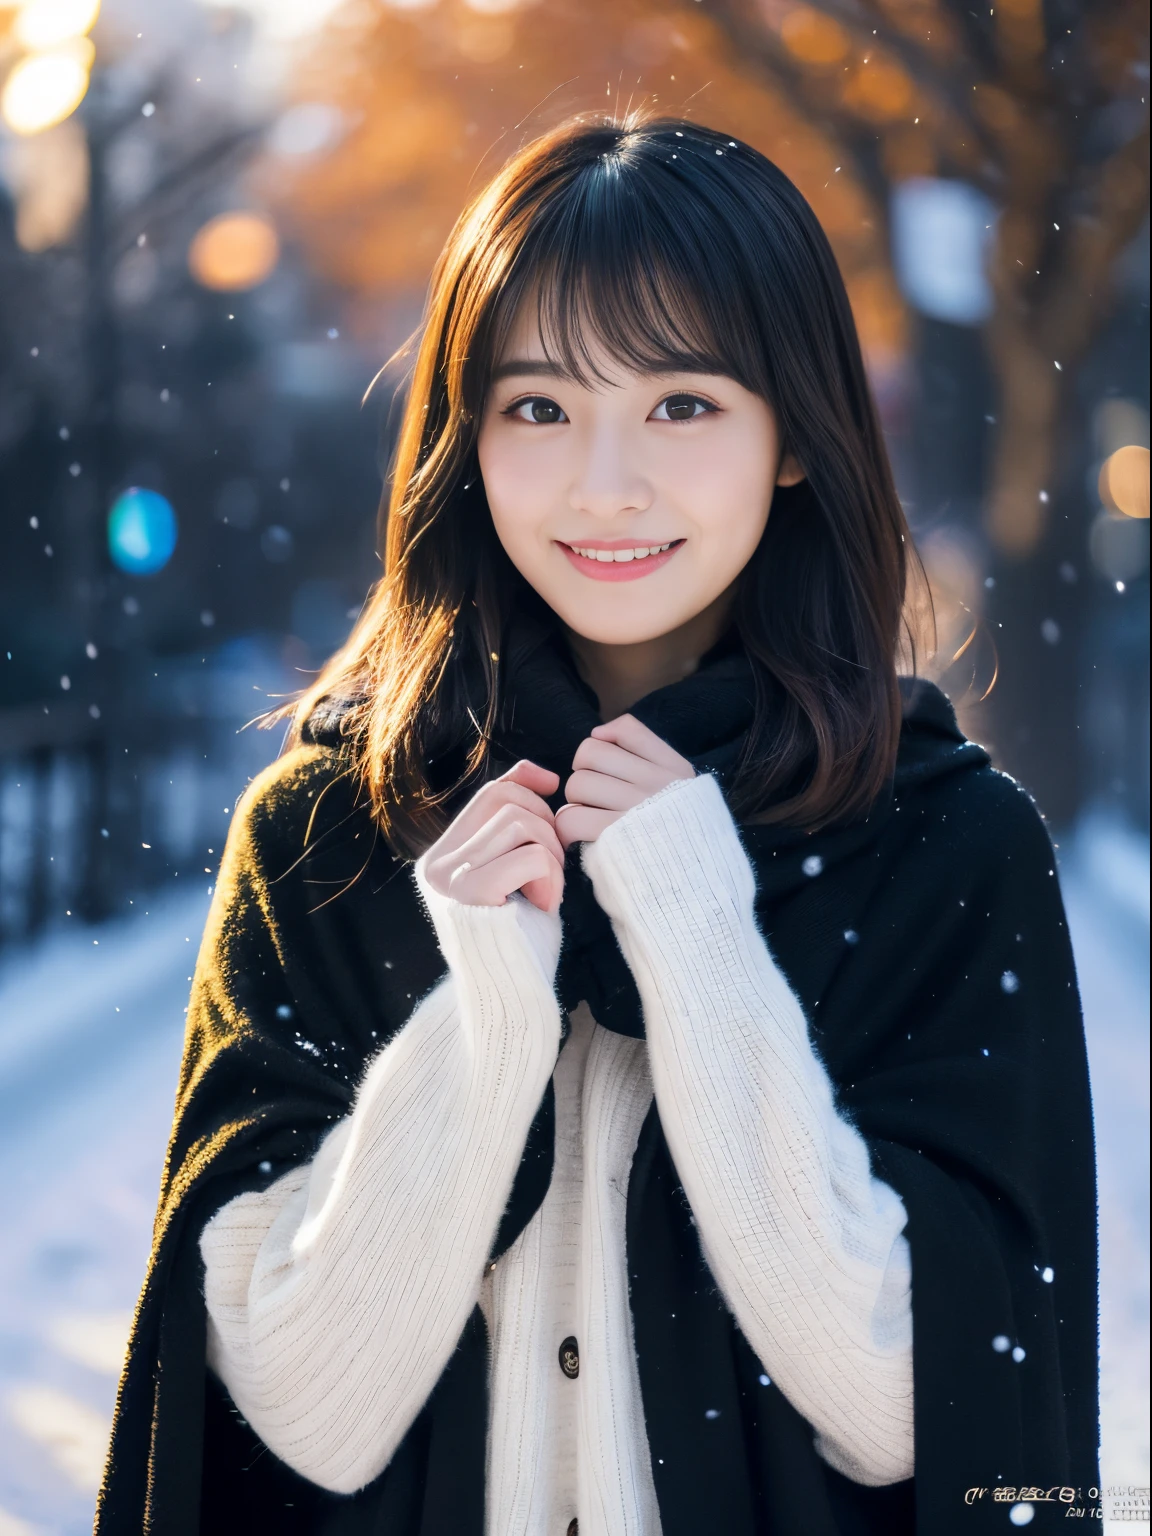 Наблюдая, как тихо падает снег. Ее интроспективное и слезливое выражение лица、Вызывает тоску и тоску по зимним ночам。。。。。。、высшее качество、гипер HD、Ёшитомо Нара, Японские модели, Красивая японская жена, с короткими волосами, 27-летняя девушка-модель., 4 К ], 4k], 27 лет, Сакимичан, Сакимичан、(Гиперреалистичный), (Иллюстрация), (высокое разрешение), (8К), (Очень подробно), (Best Иллюстрация), (Высочайшее качество с прекрасным вниманием к деталям), (ультрадетализированный), (стол), (обои), (детальное лицо), Один, Одна девушка, зритель, мелкие детали, детальное лицо, во тьме, глубокие тени, сдержанный, чистое лицо_v1, улыбка, длинные волосы, Черная шаль на прямых волосах, 46-точечная диагональная челка, все тело, ноги скрещены